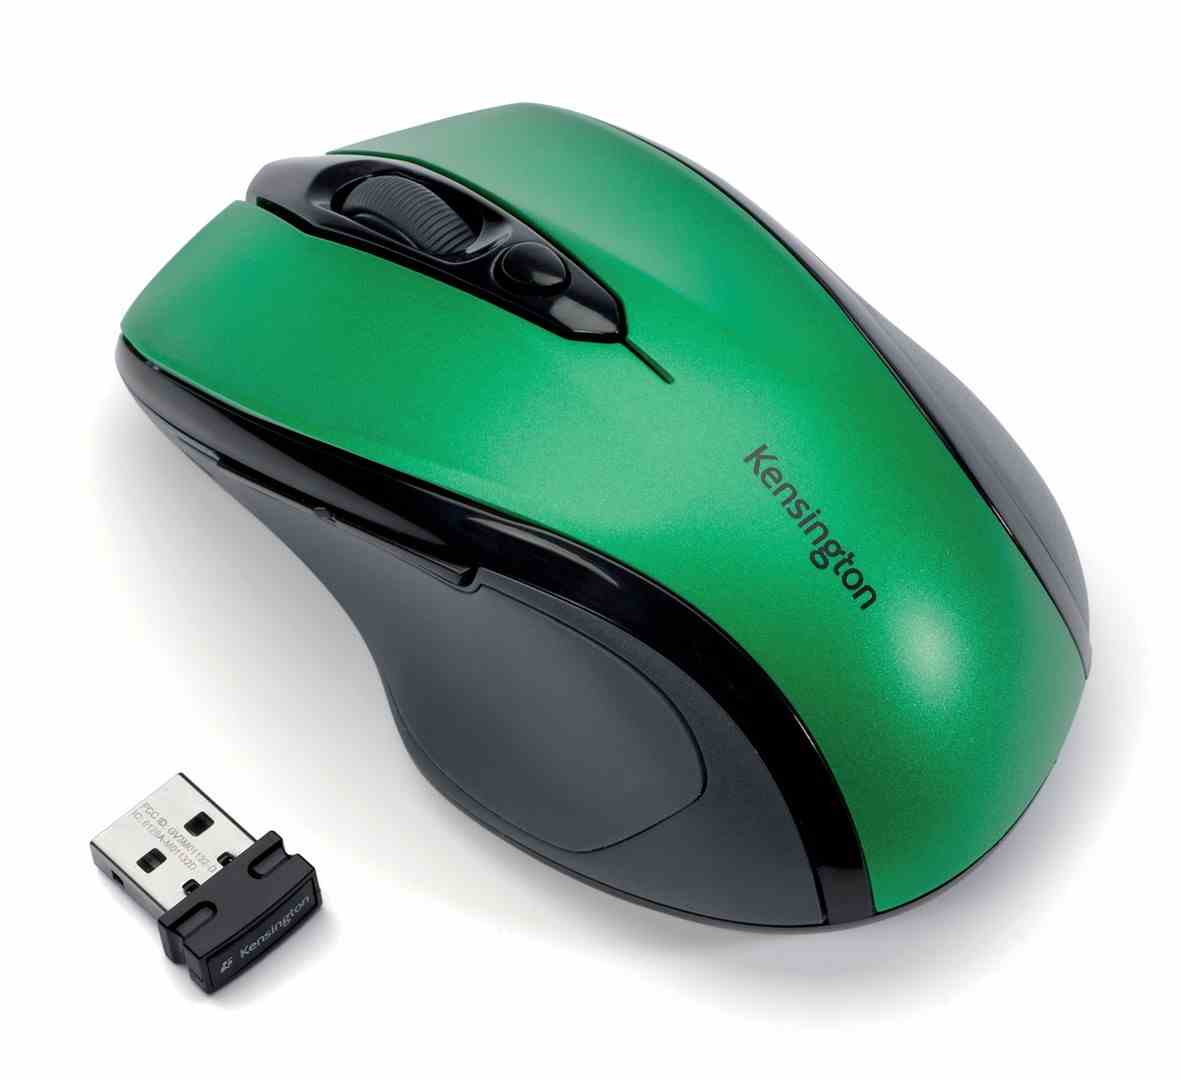 Bezprzewodowa mysz Kensington Pro Fit®, rozmiar średni, zielona